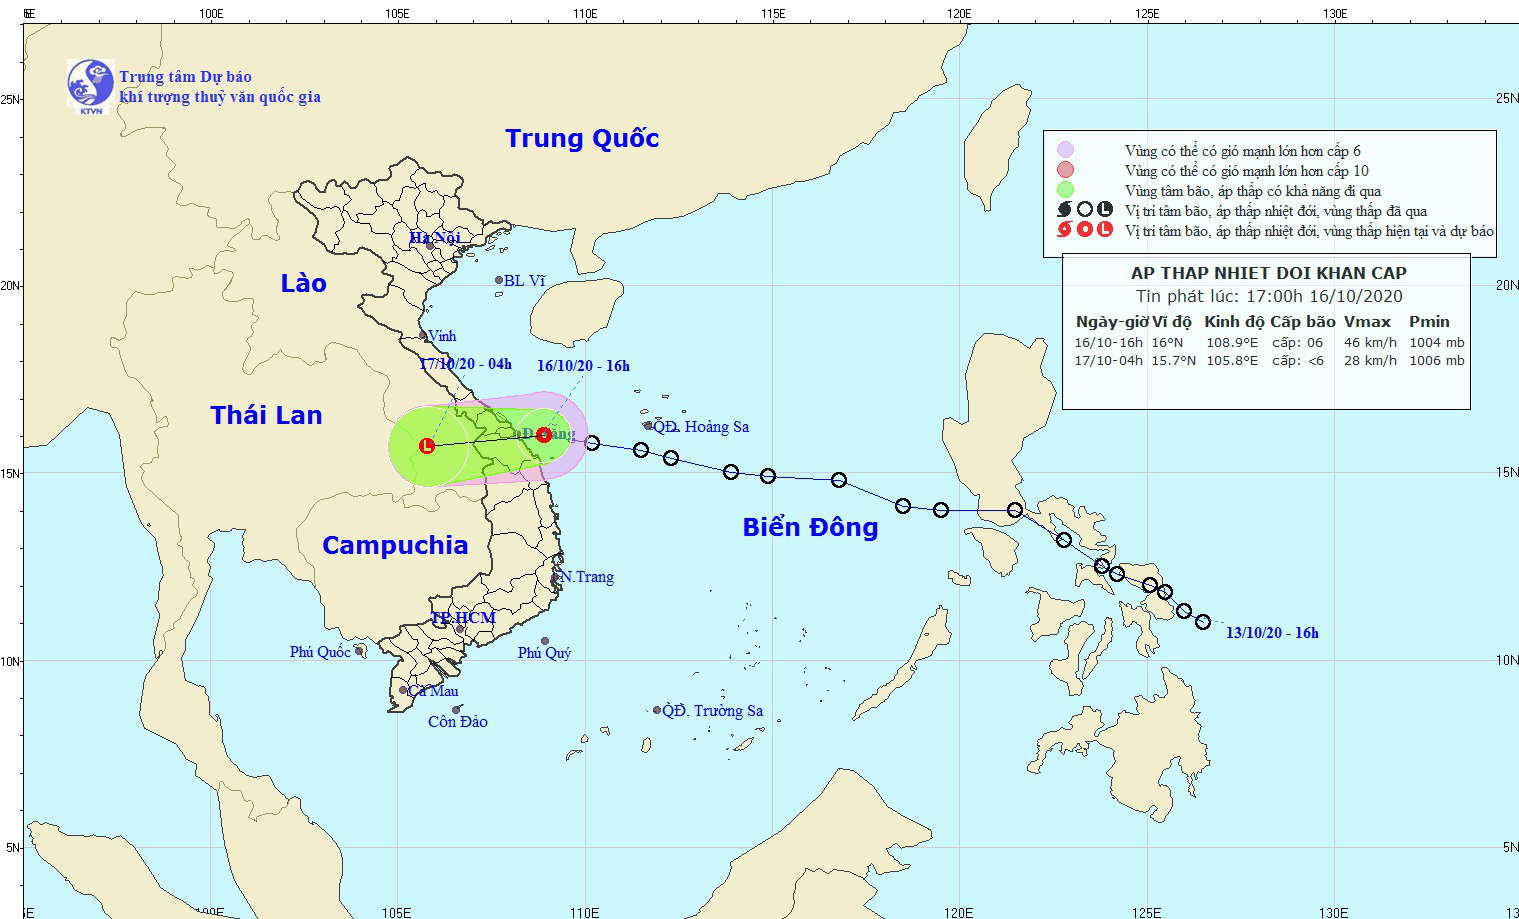 Áp thấp nhiệt đới đã hoành hành trên vùng biển Đà Nẵng - Quảng Ngãi, cảnh báo Thừa Thiên - Huế mưa rất to - Ảnh 1.